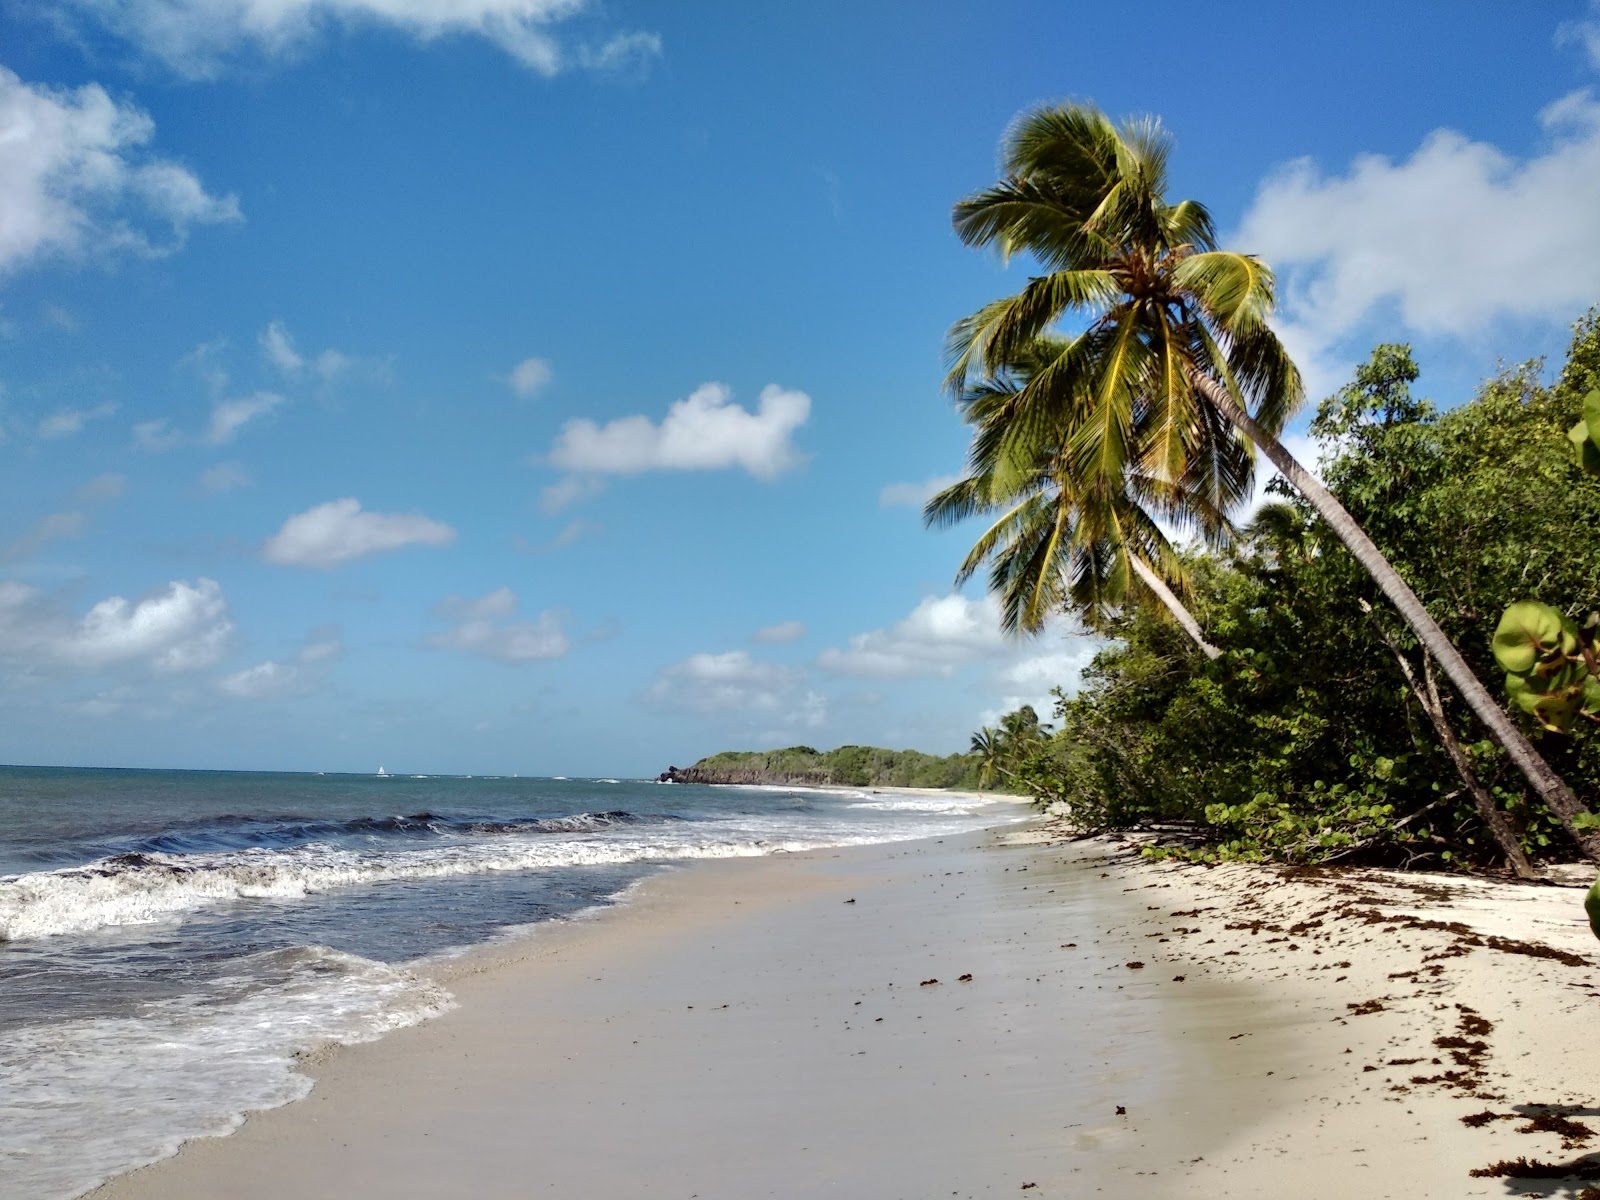 Foto de Grande terre beach localizado em área natural